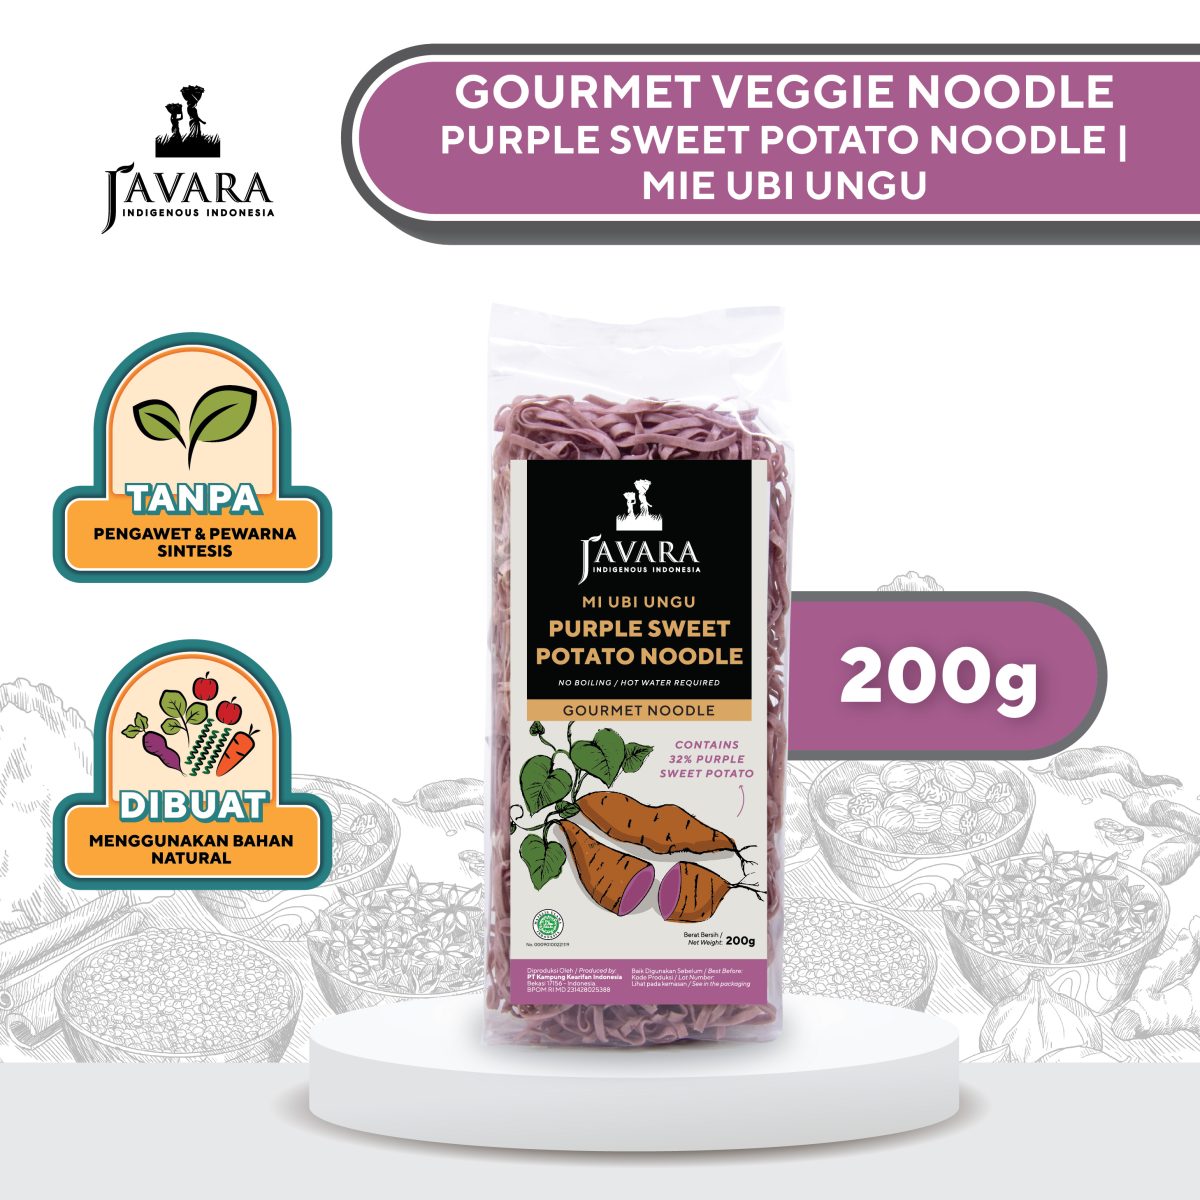 Javara Purple Sweet Potato Noodle 200g